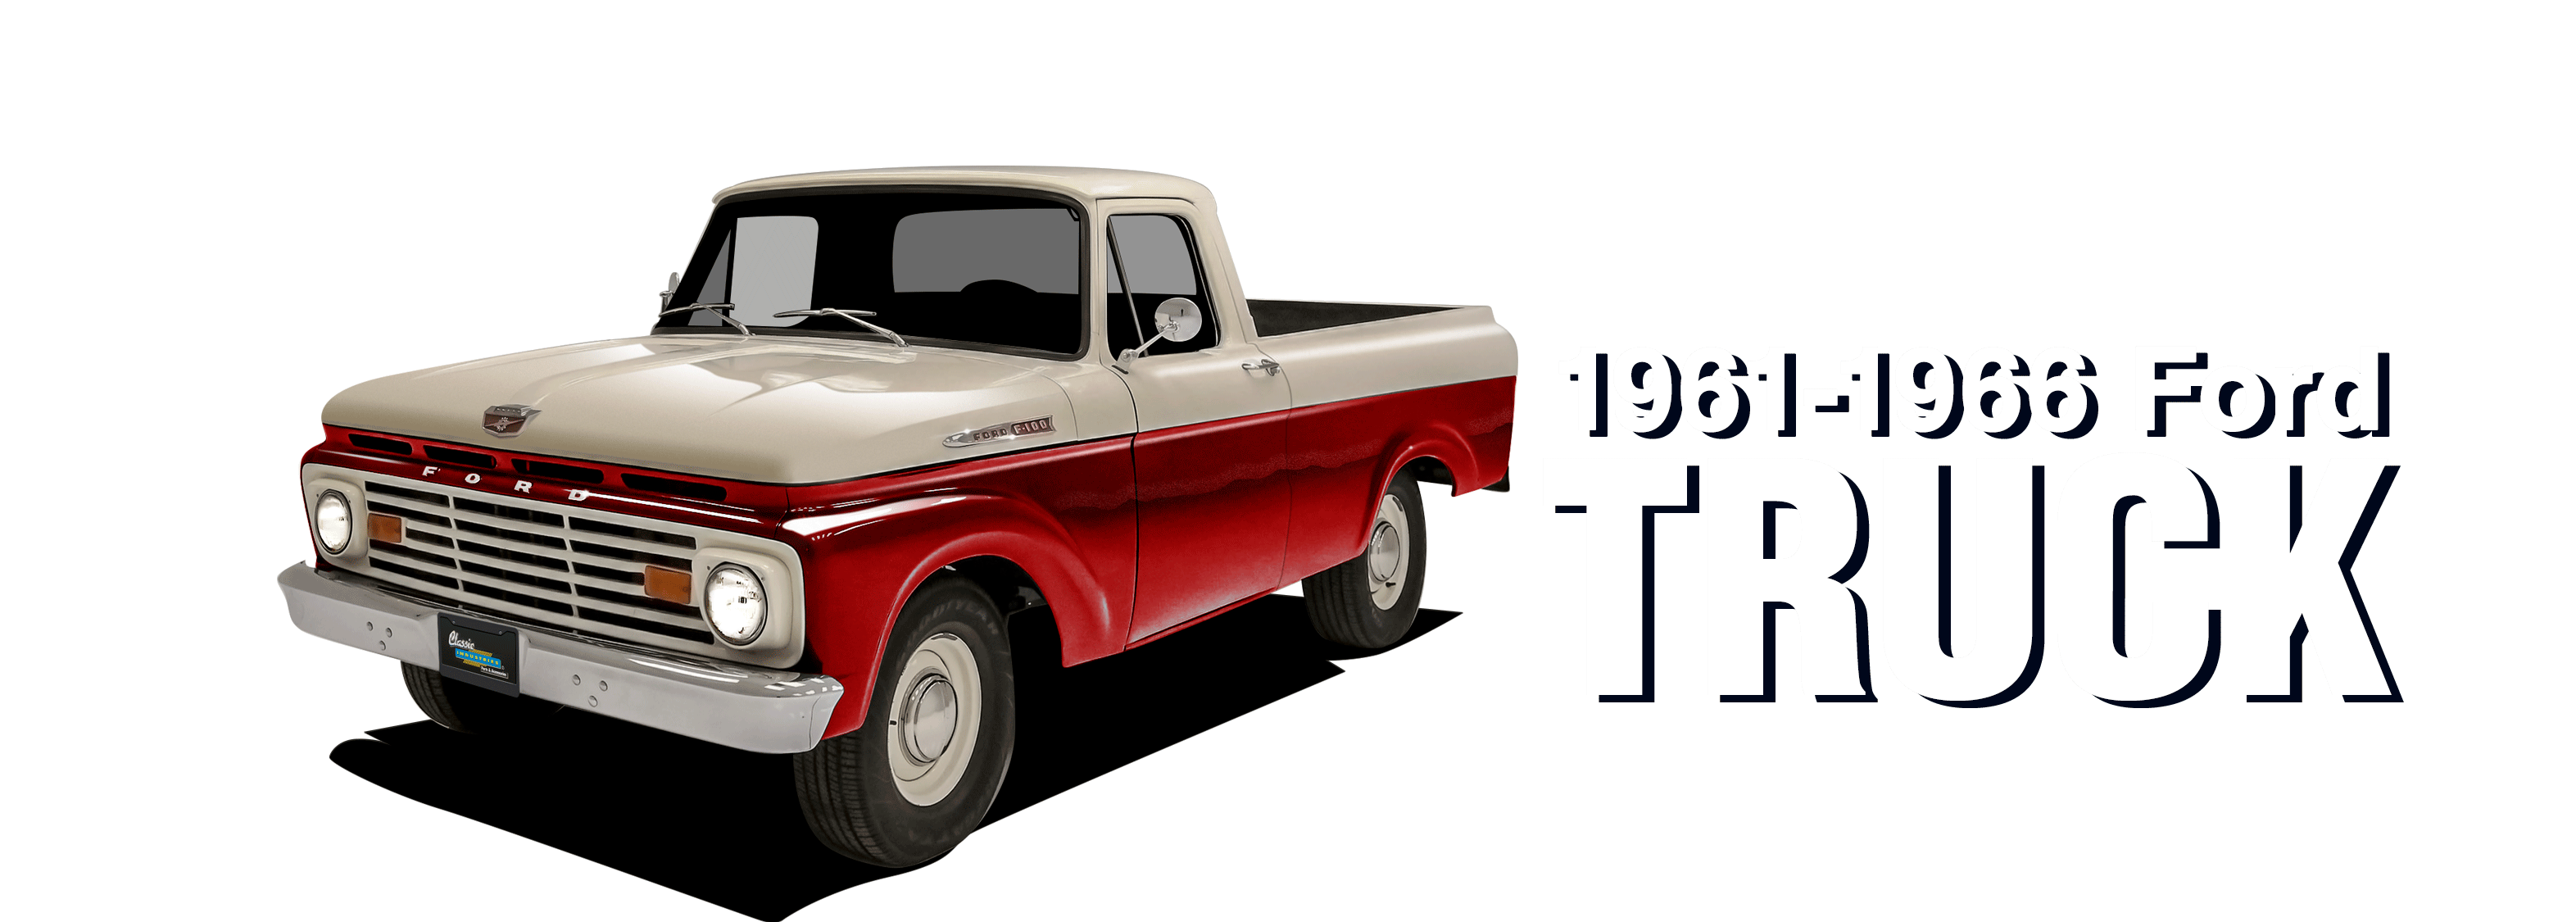 61-66FordTruck-vehicle-desktop_v2